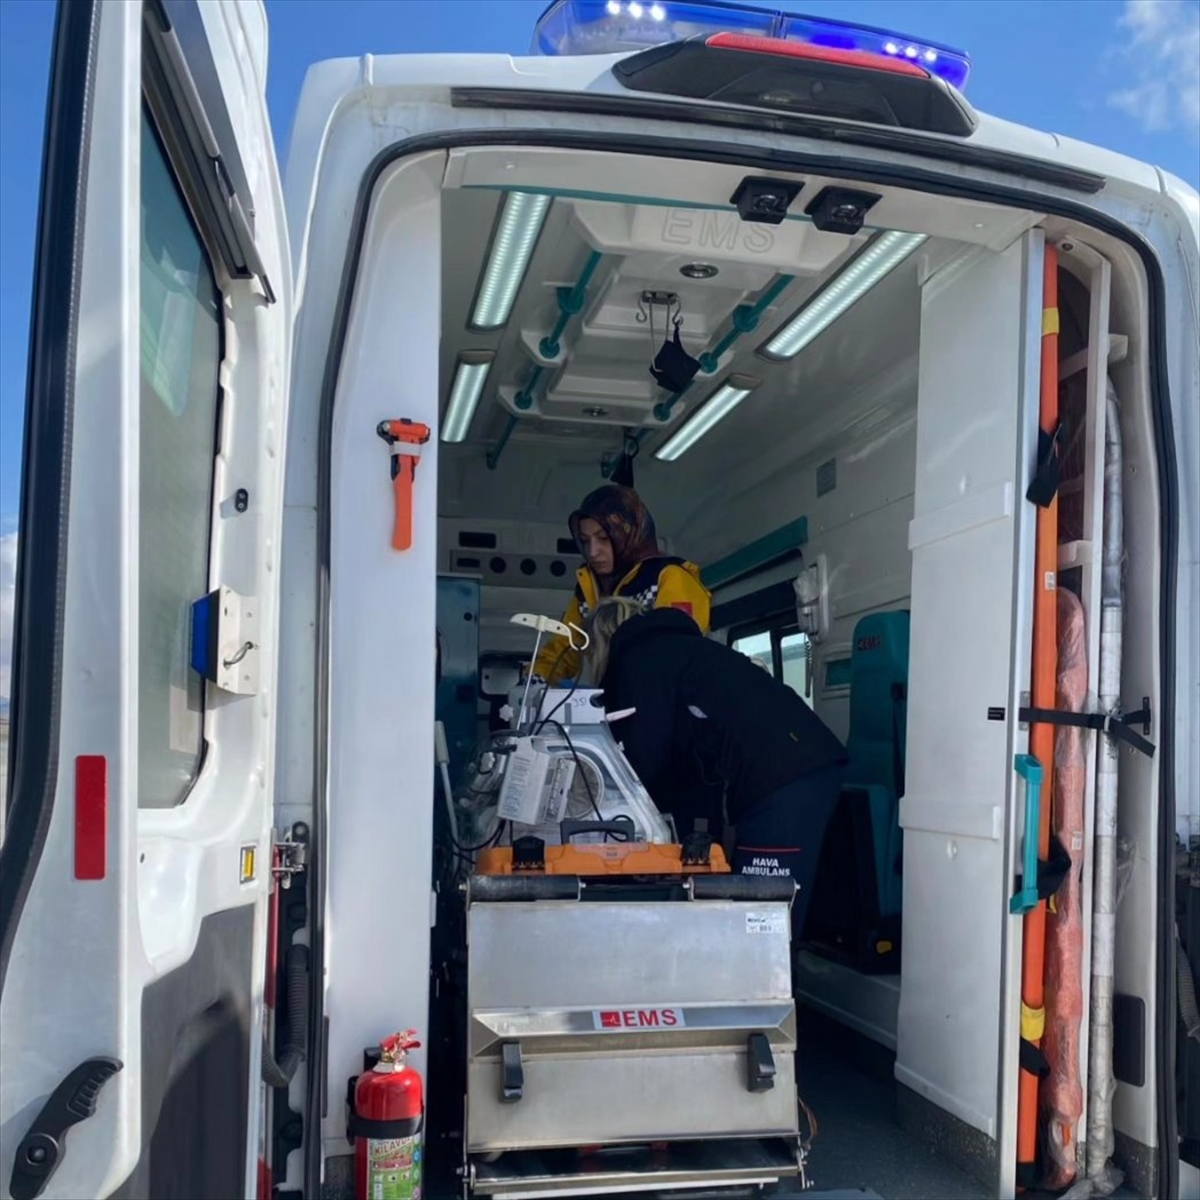 Kalp yetmezliği olan bebek ambulans uçakla Van'dan Eskişehir'e sevk edildi